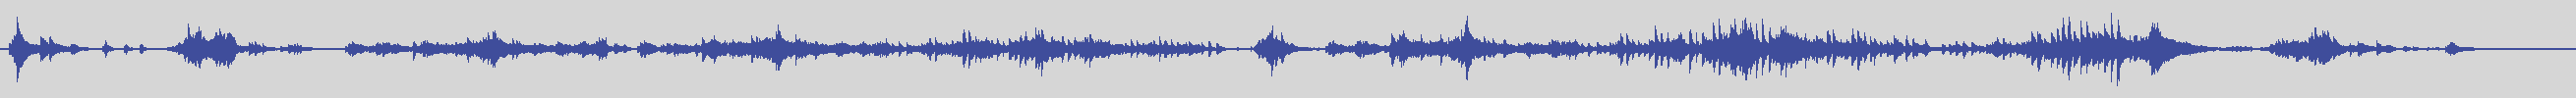 big_music_classic [BMC011] Marco Noia - Tidus' Theme [] audio wave form